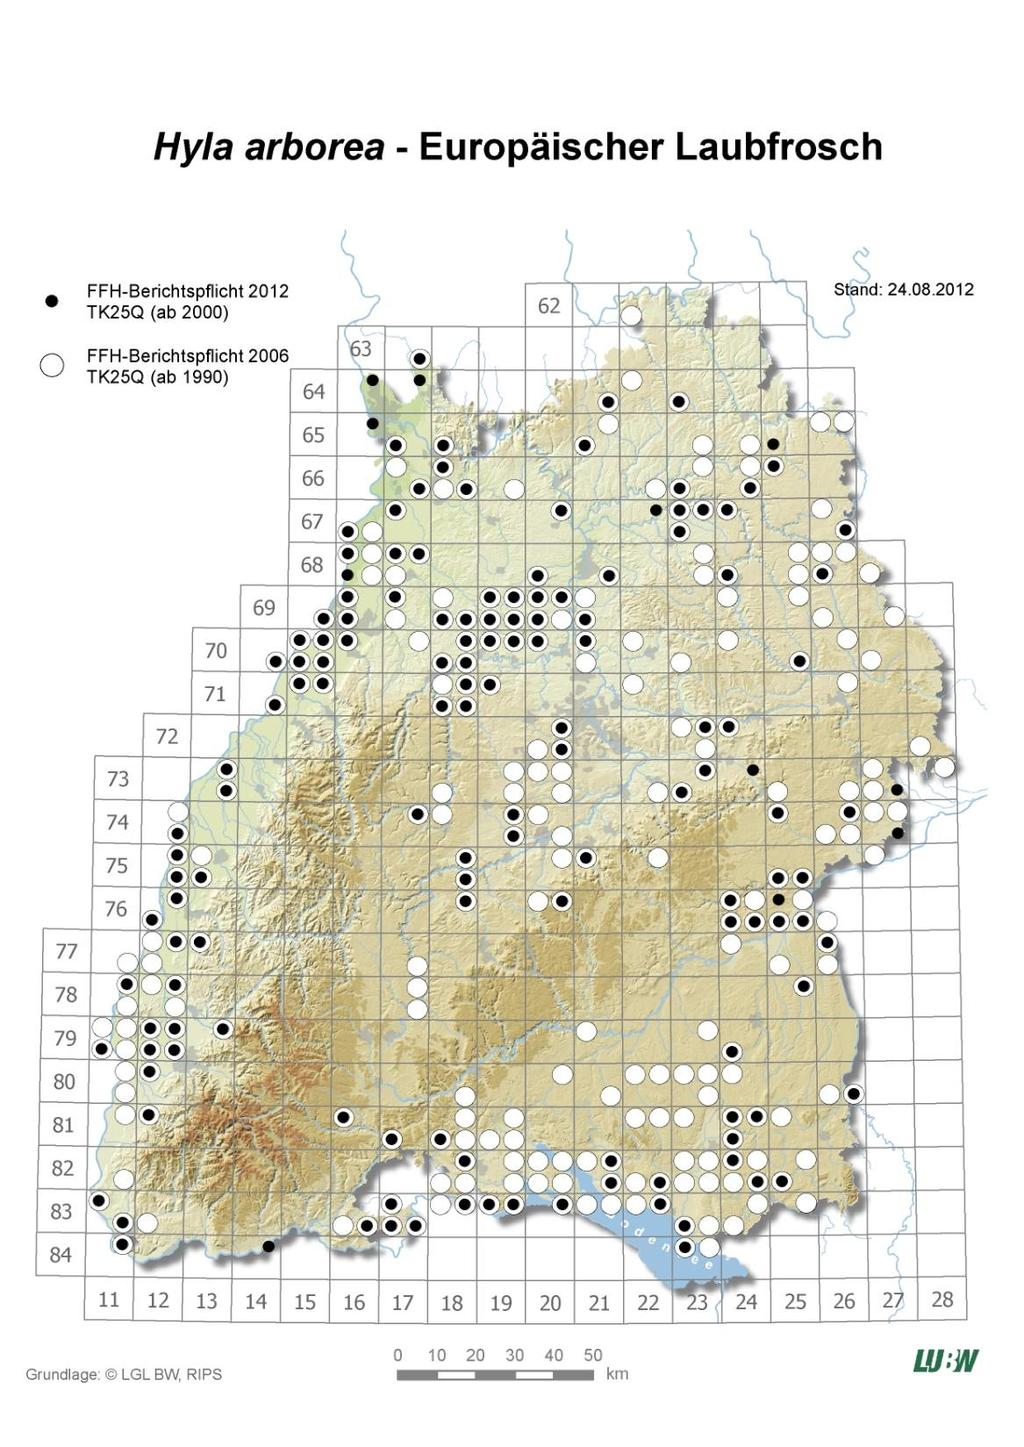 Erhaltungszustand Baden-Württemberg günstig unzureichend schlecht unbekannt Verbreitung Population Habitat Zukunft Gesamt Als Kletterfrosch bevorzugt er Lebensräume mit gebüschreichem Feuchtgrünland